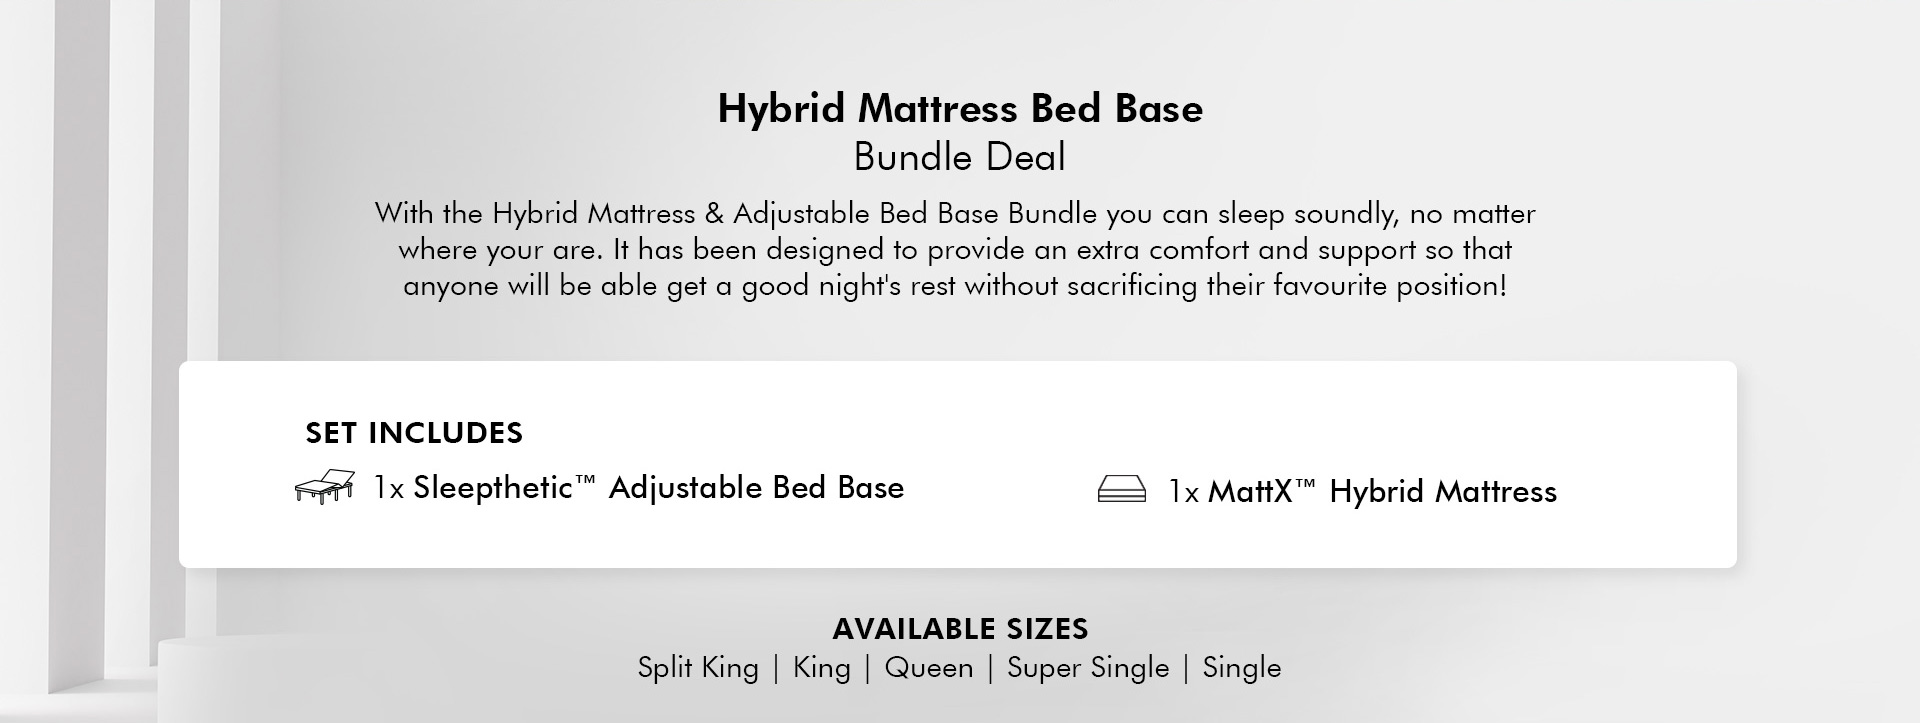 Hybrid Mattress Bed Base Bundle Deal